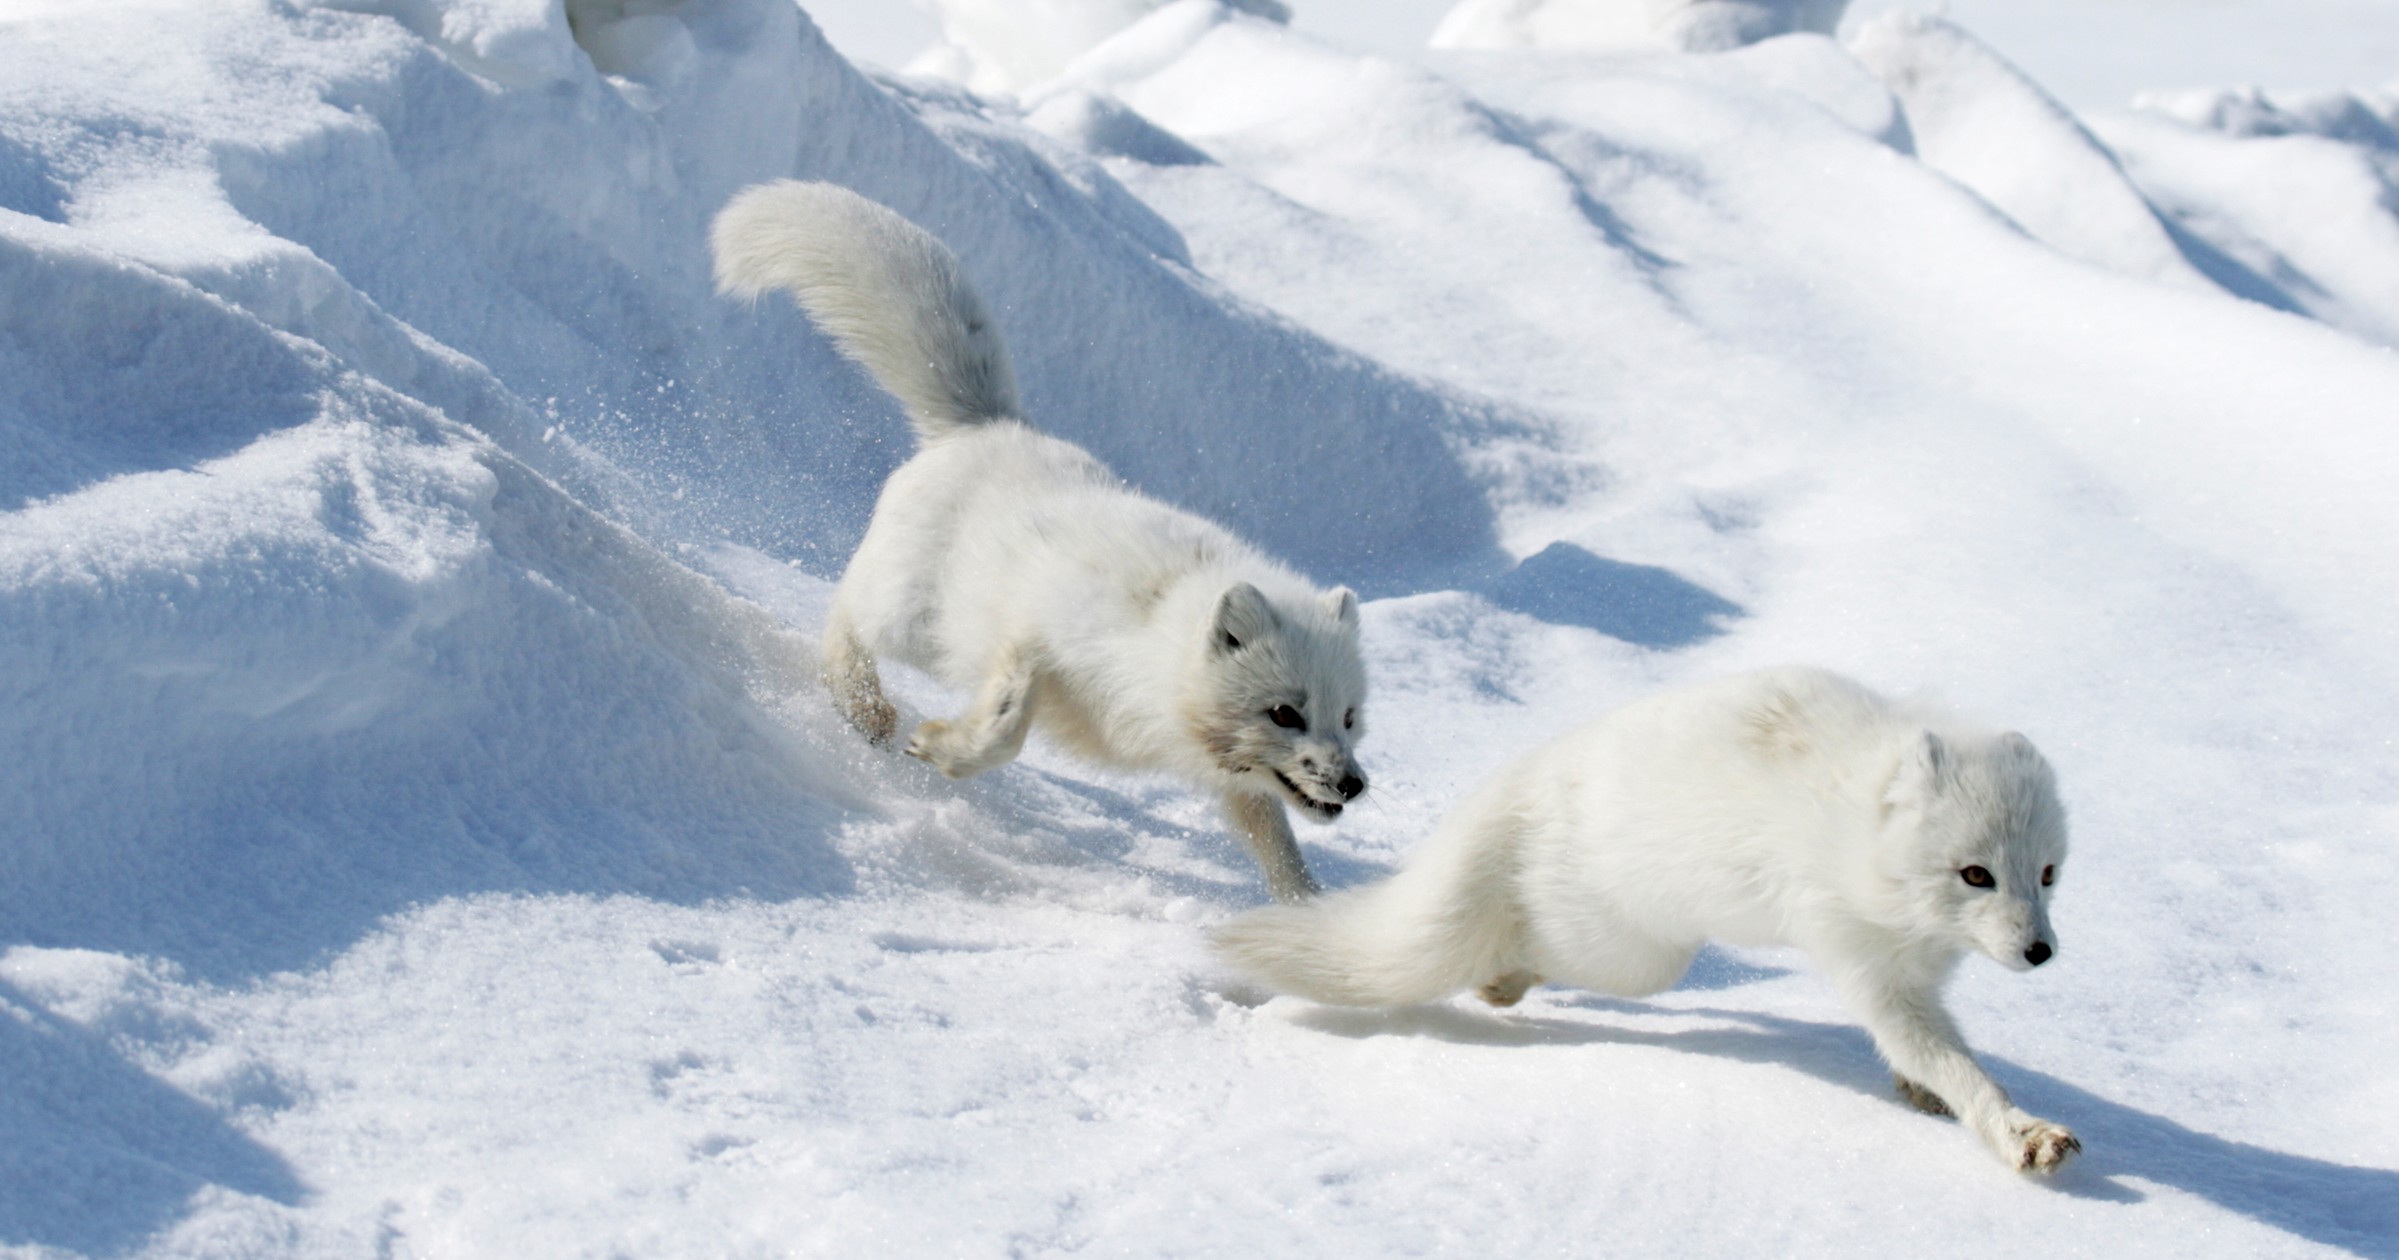 Arktisen alueen elämää esittelevä oppimateriaali kertoo tarinoita arktisten lajien elämästä, auttaa ymmärtämään arktisia ilmiöitä omassa lähiympäristössä ja kannustaa toimimaan luonnon puolesta.